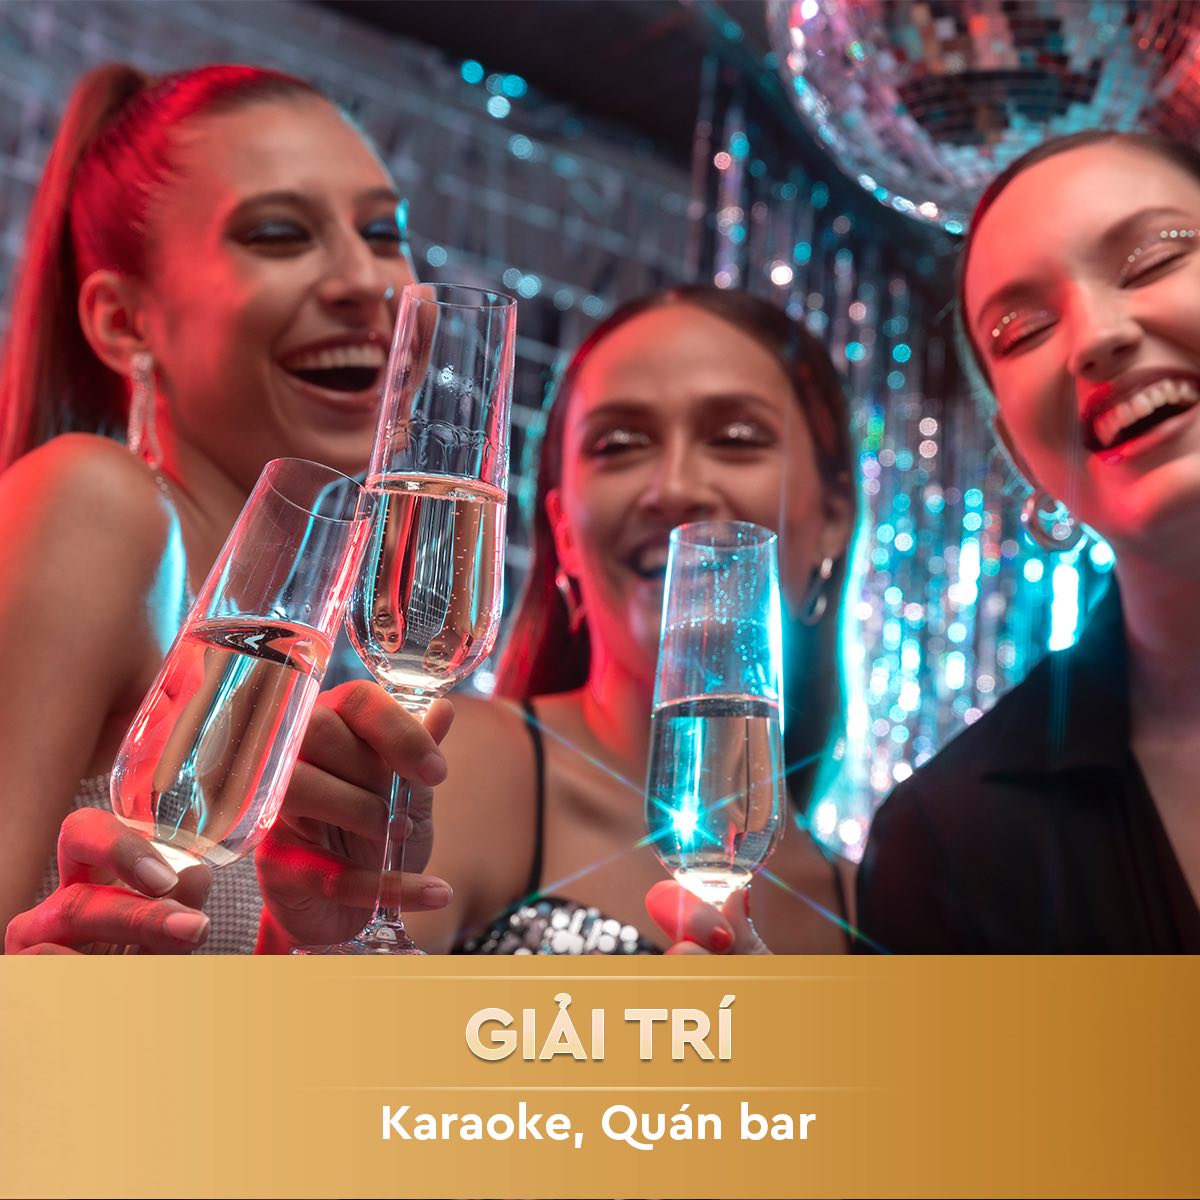 The Global City đa dạng loại hình kinh doanh giải trí, karaoke, quán bar tại nhà phố SOHO